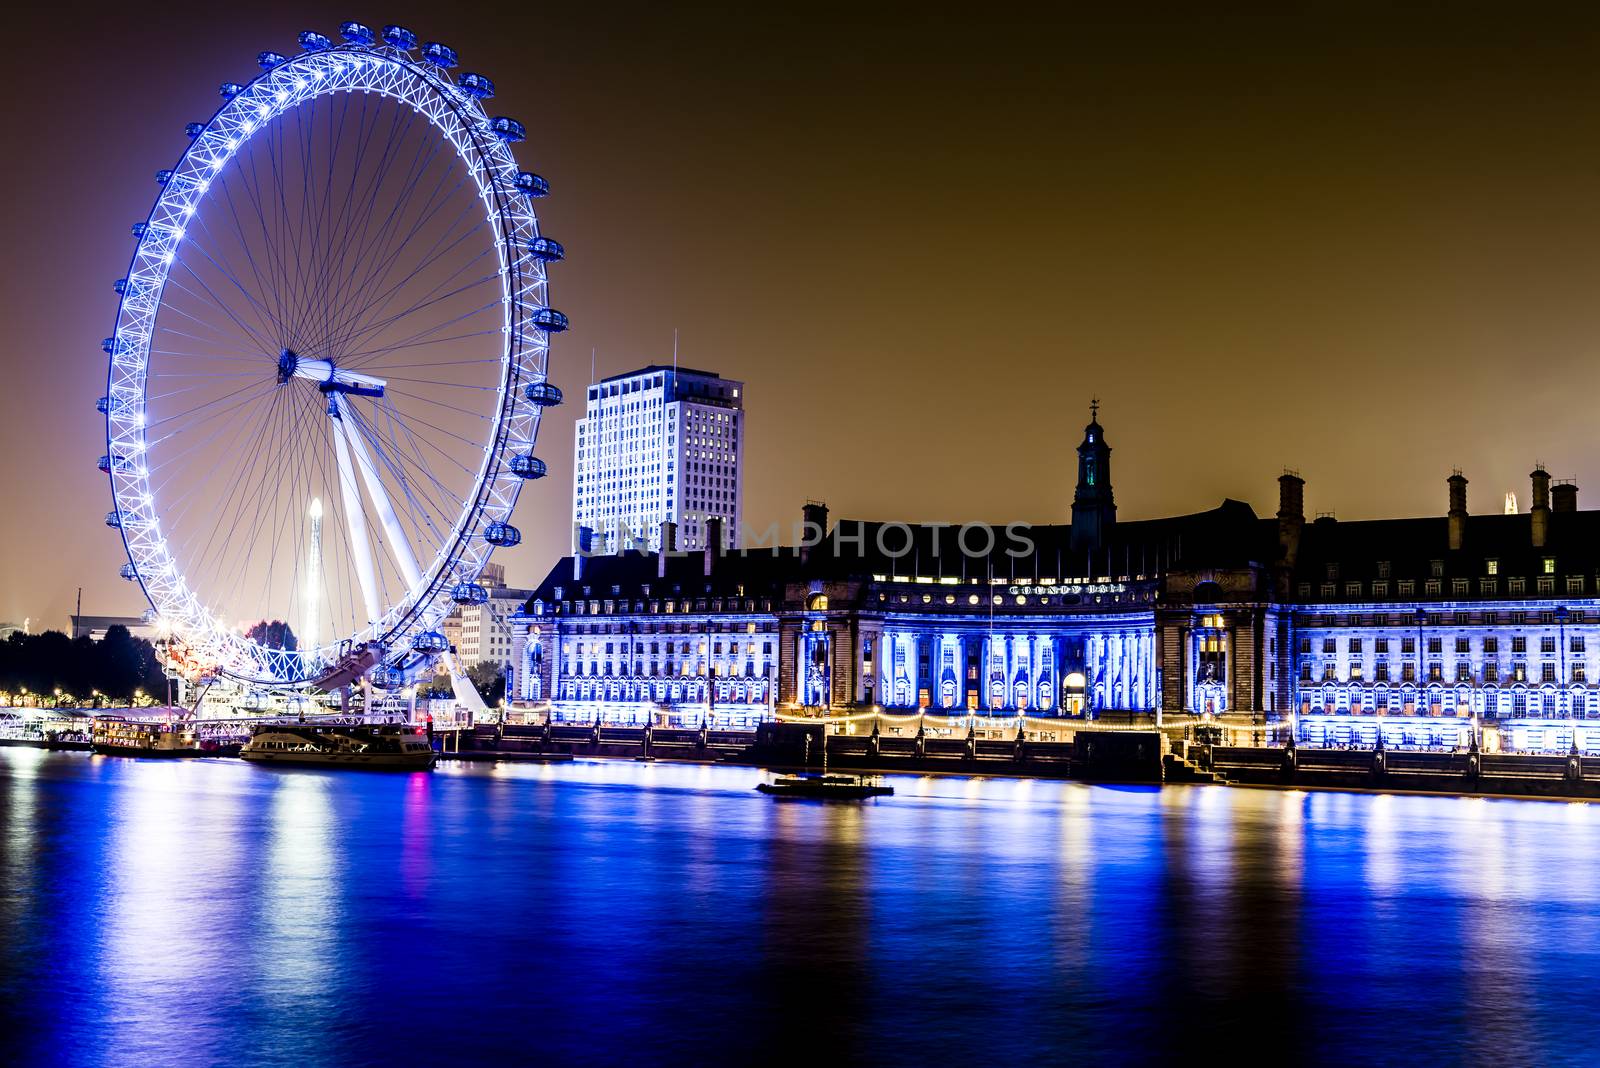 London at night along the River Thames by MohanaAntonMeryl